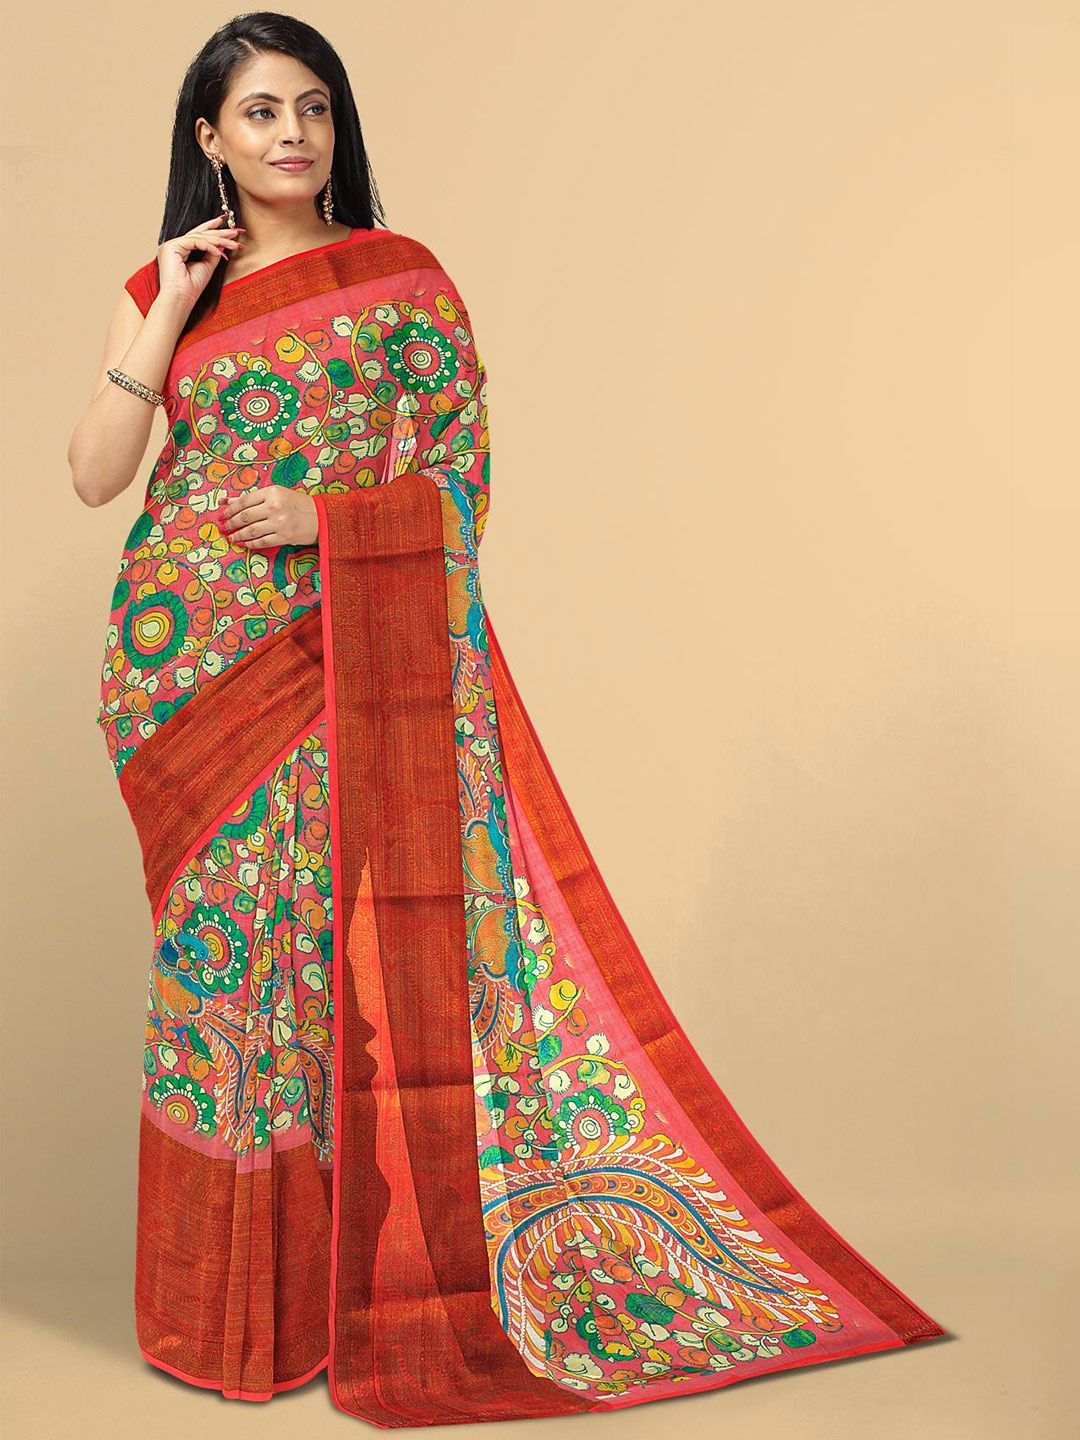 Kalamandir Red & Green Kalamkari Linen Blend Saree Price in India